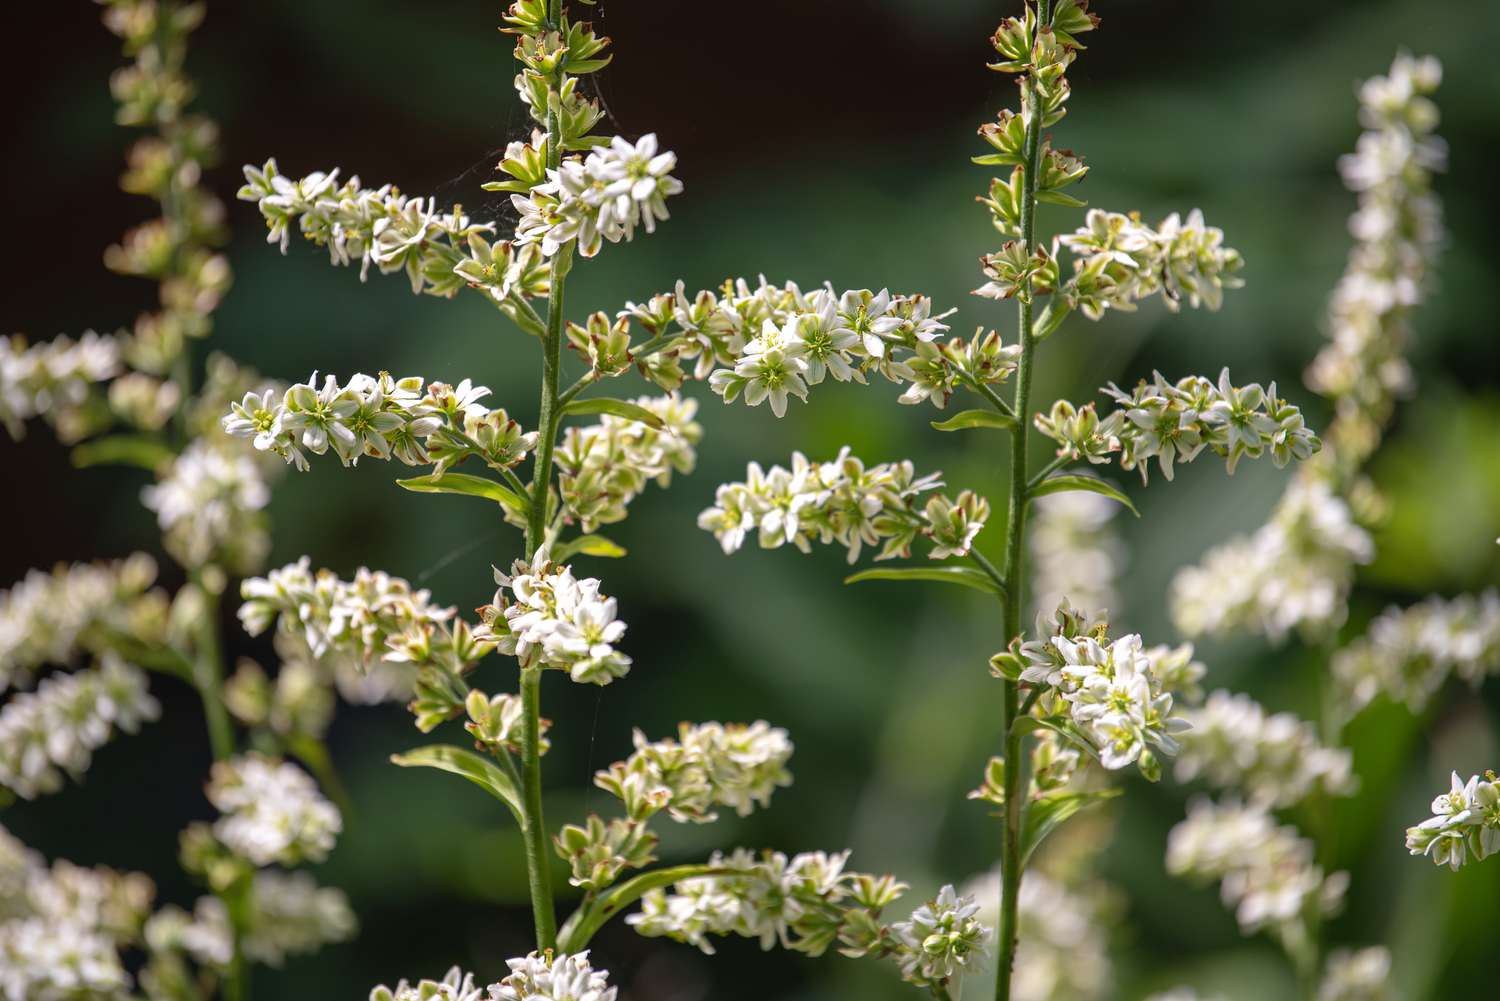 Plantas de falso heléboro com caules finos e pequenas panículas de flores brancas em close-up